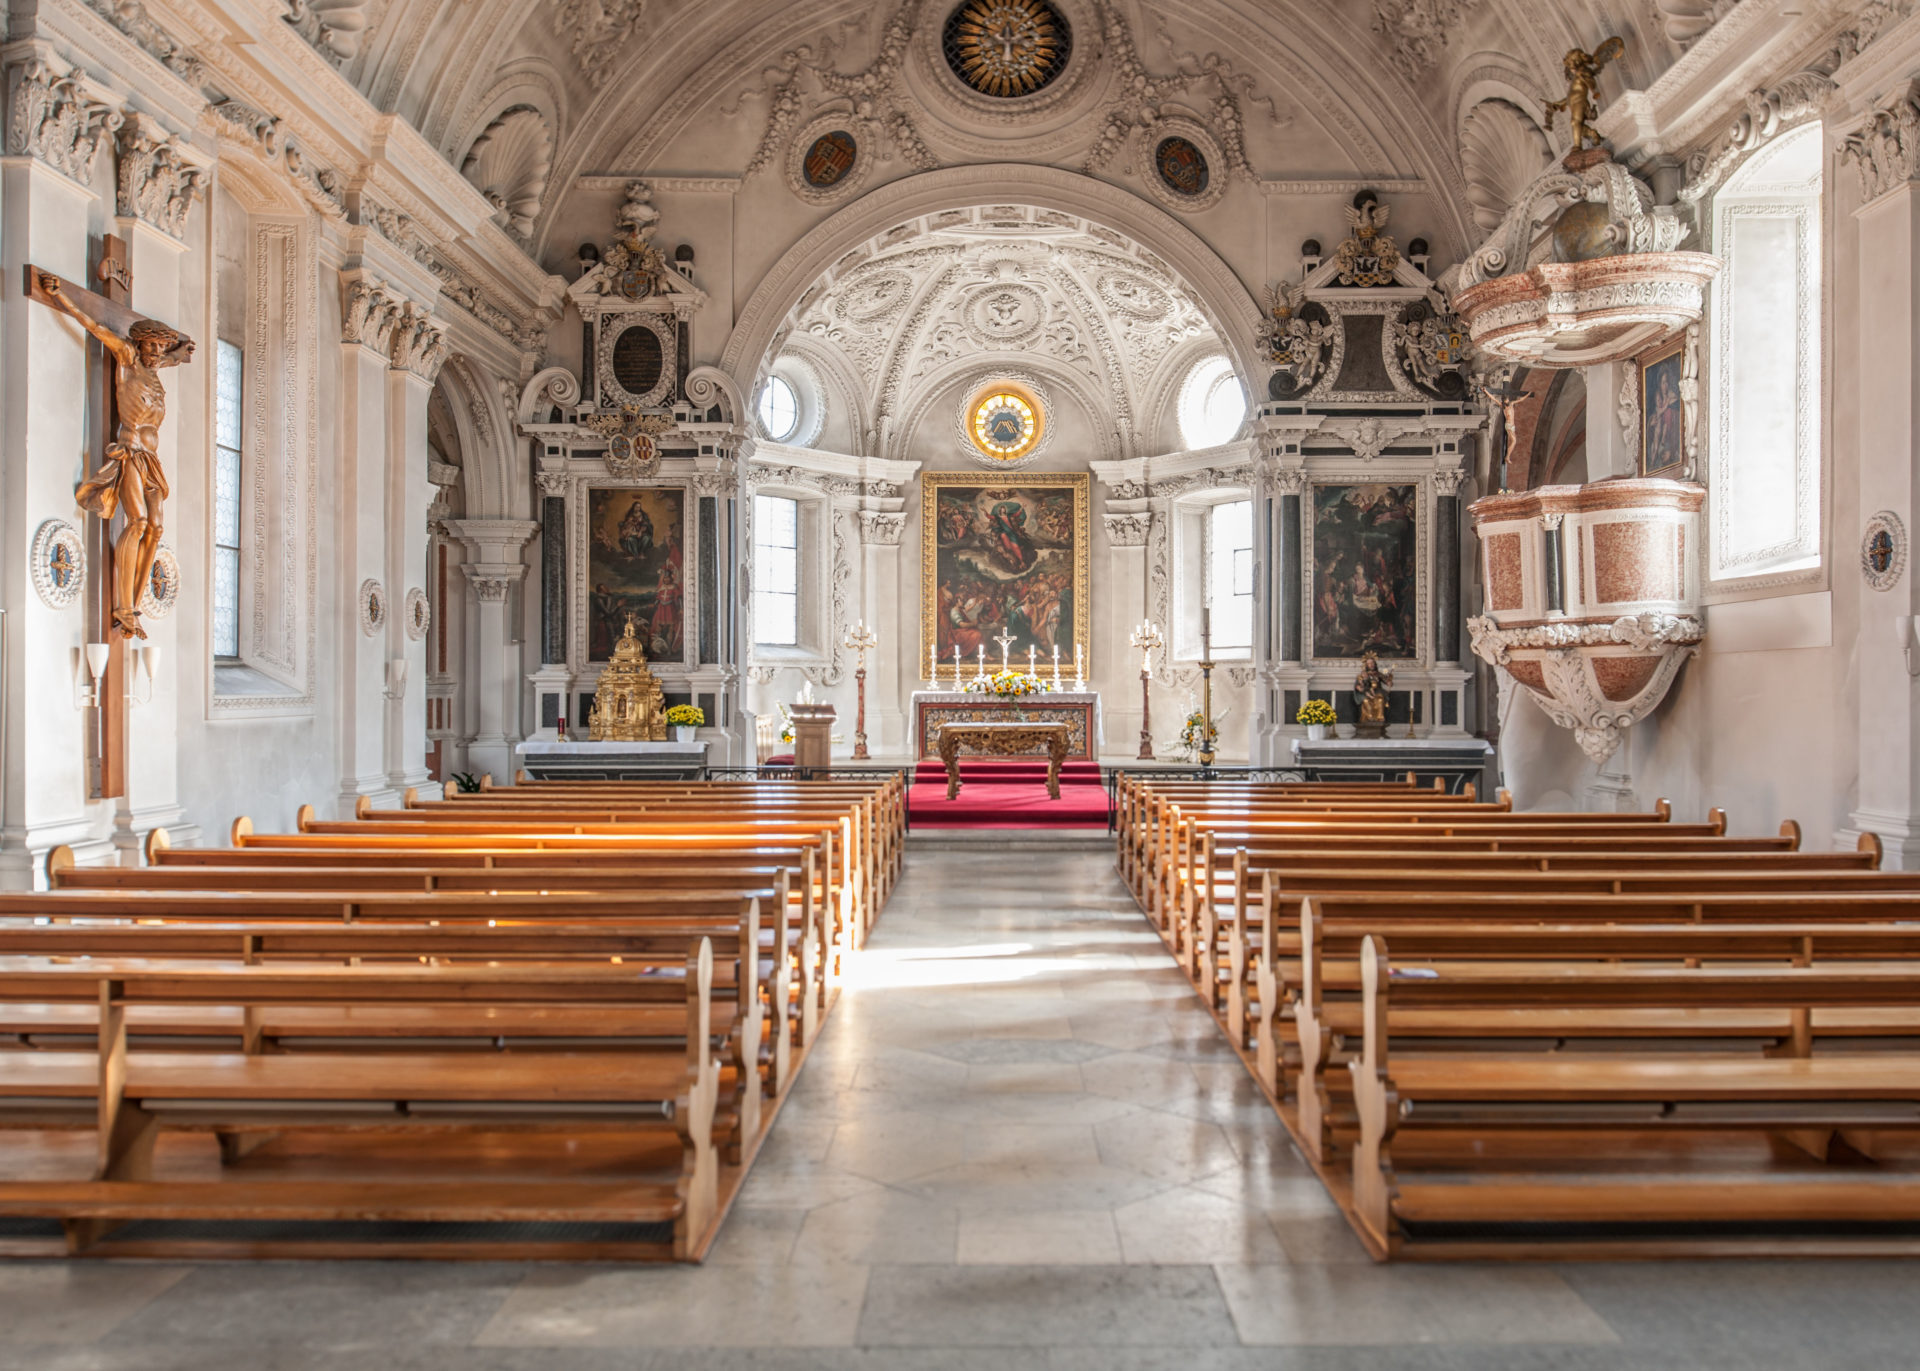 L'interno della chiesa parrochiale e di pellegrinaggio di Oberdorf (SO). (Fotografia: José R. Martinez)